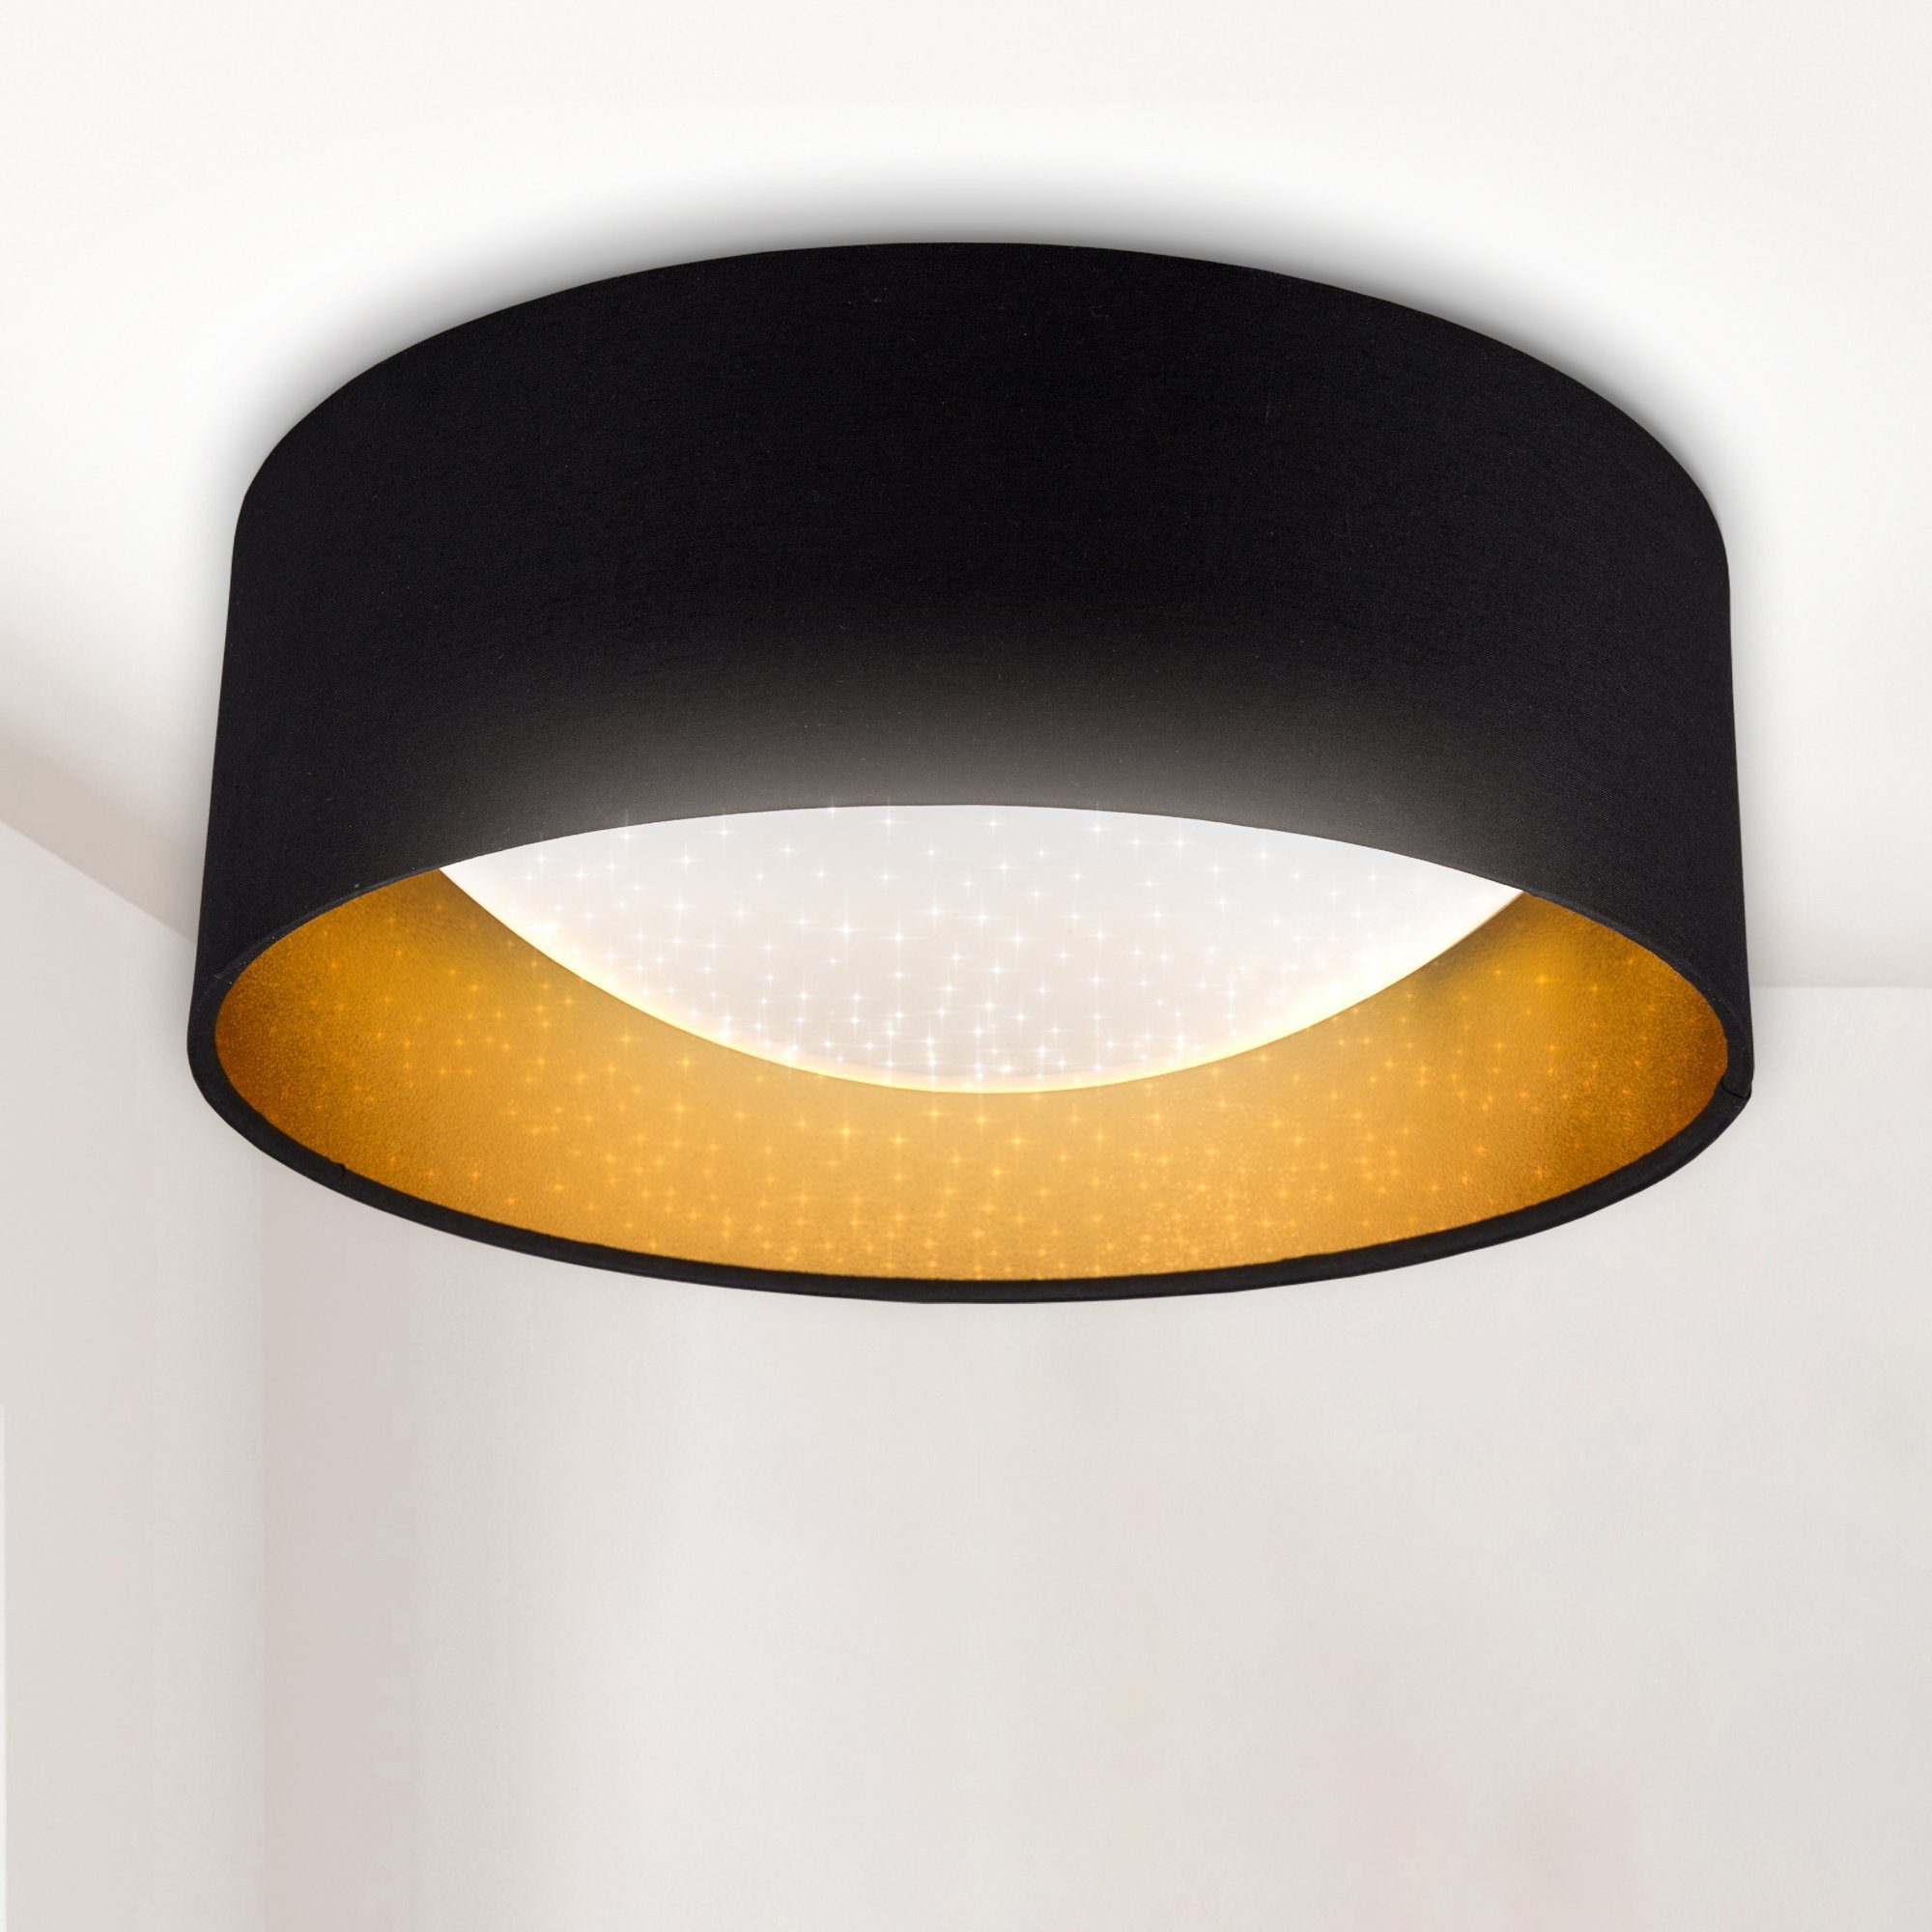 Design LED Decken Lampe runde Wohn Schlaf Zimmer Beleuchtung Stoff schwarz/gold 